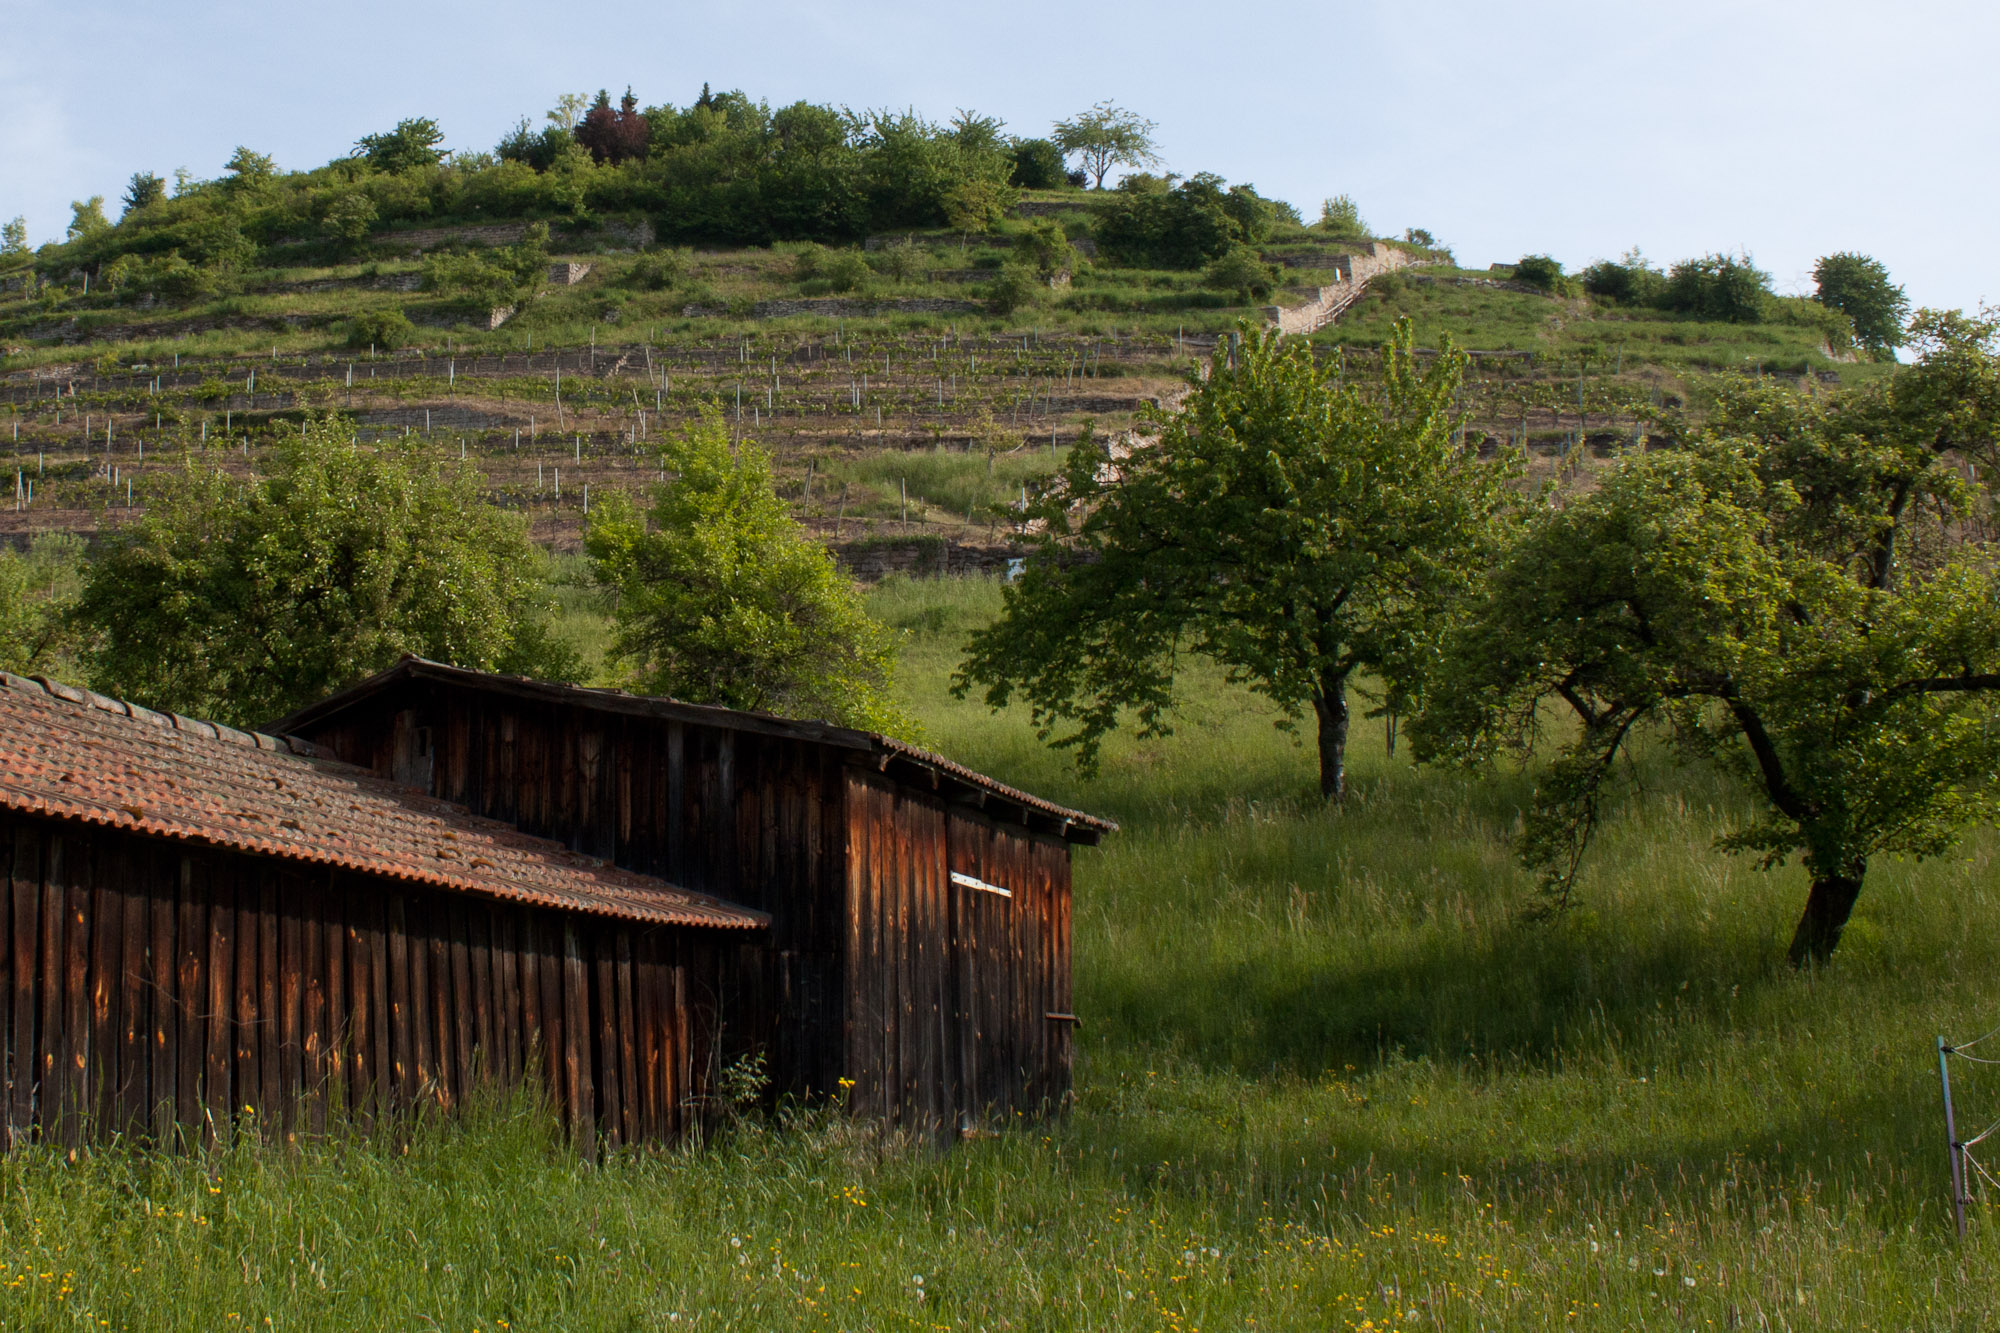 the Geigersberg vineyard from below